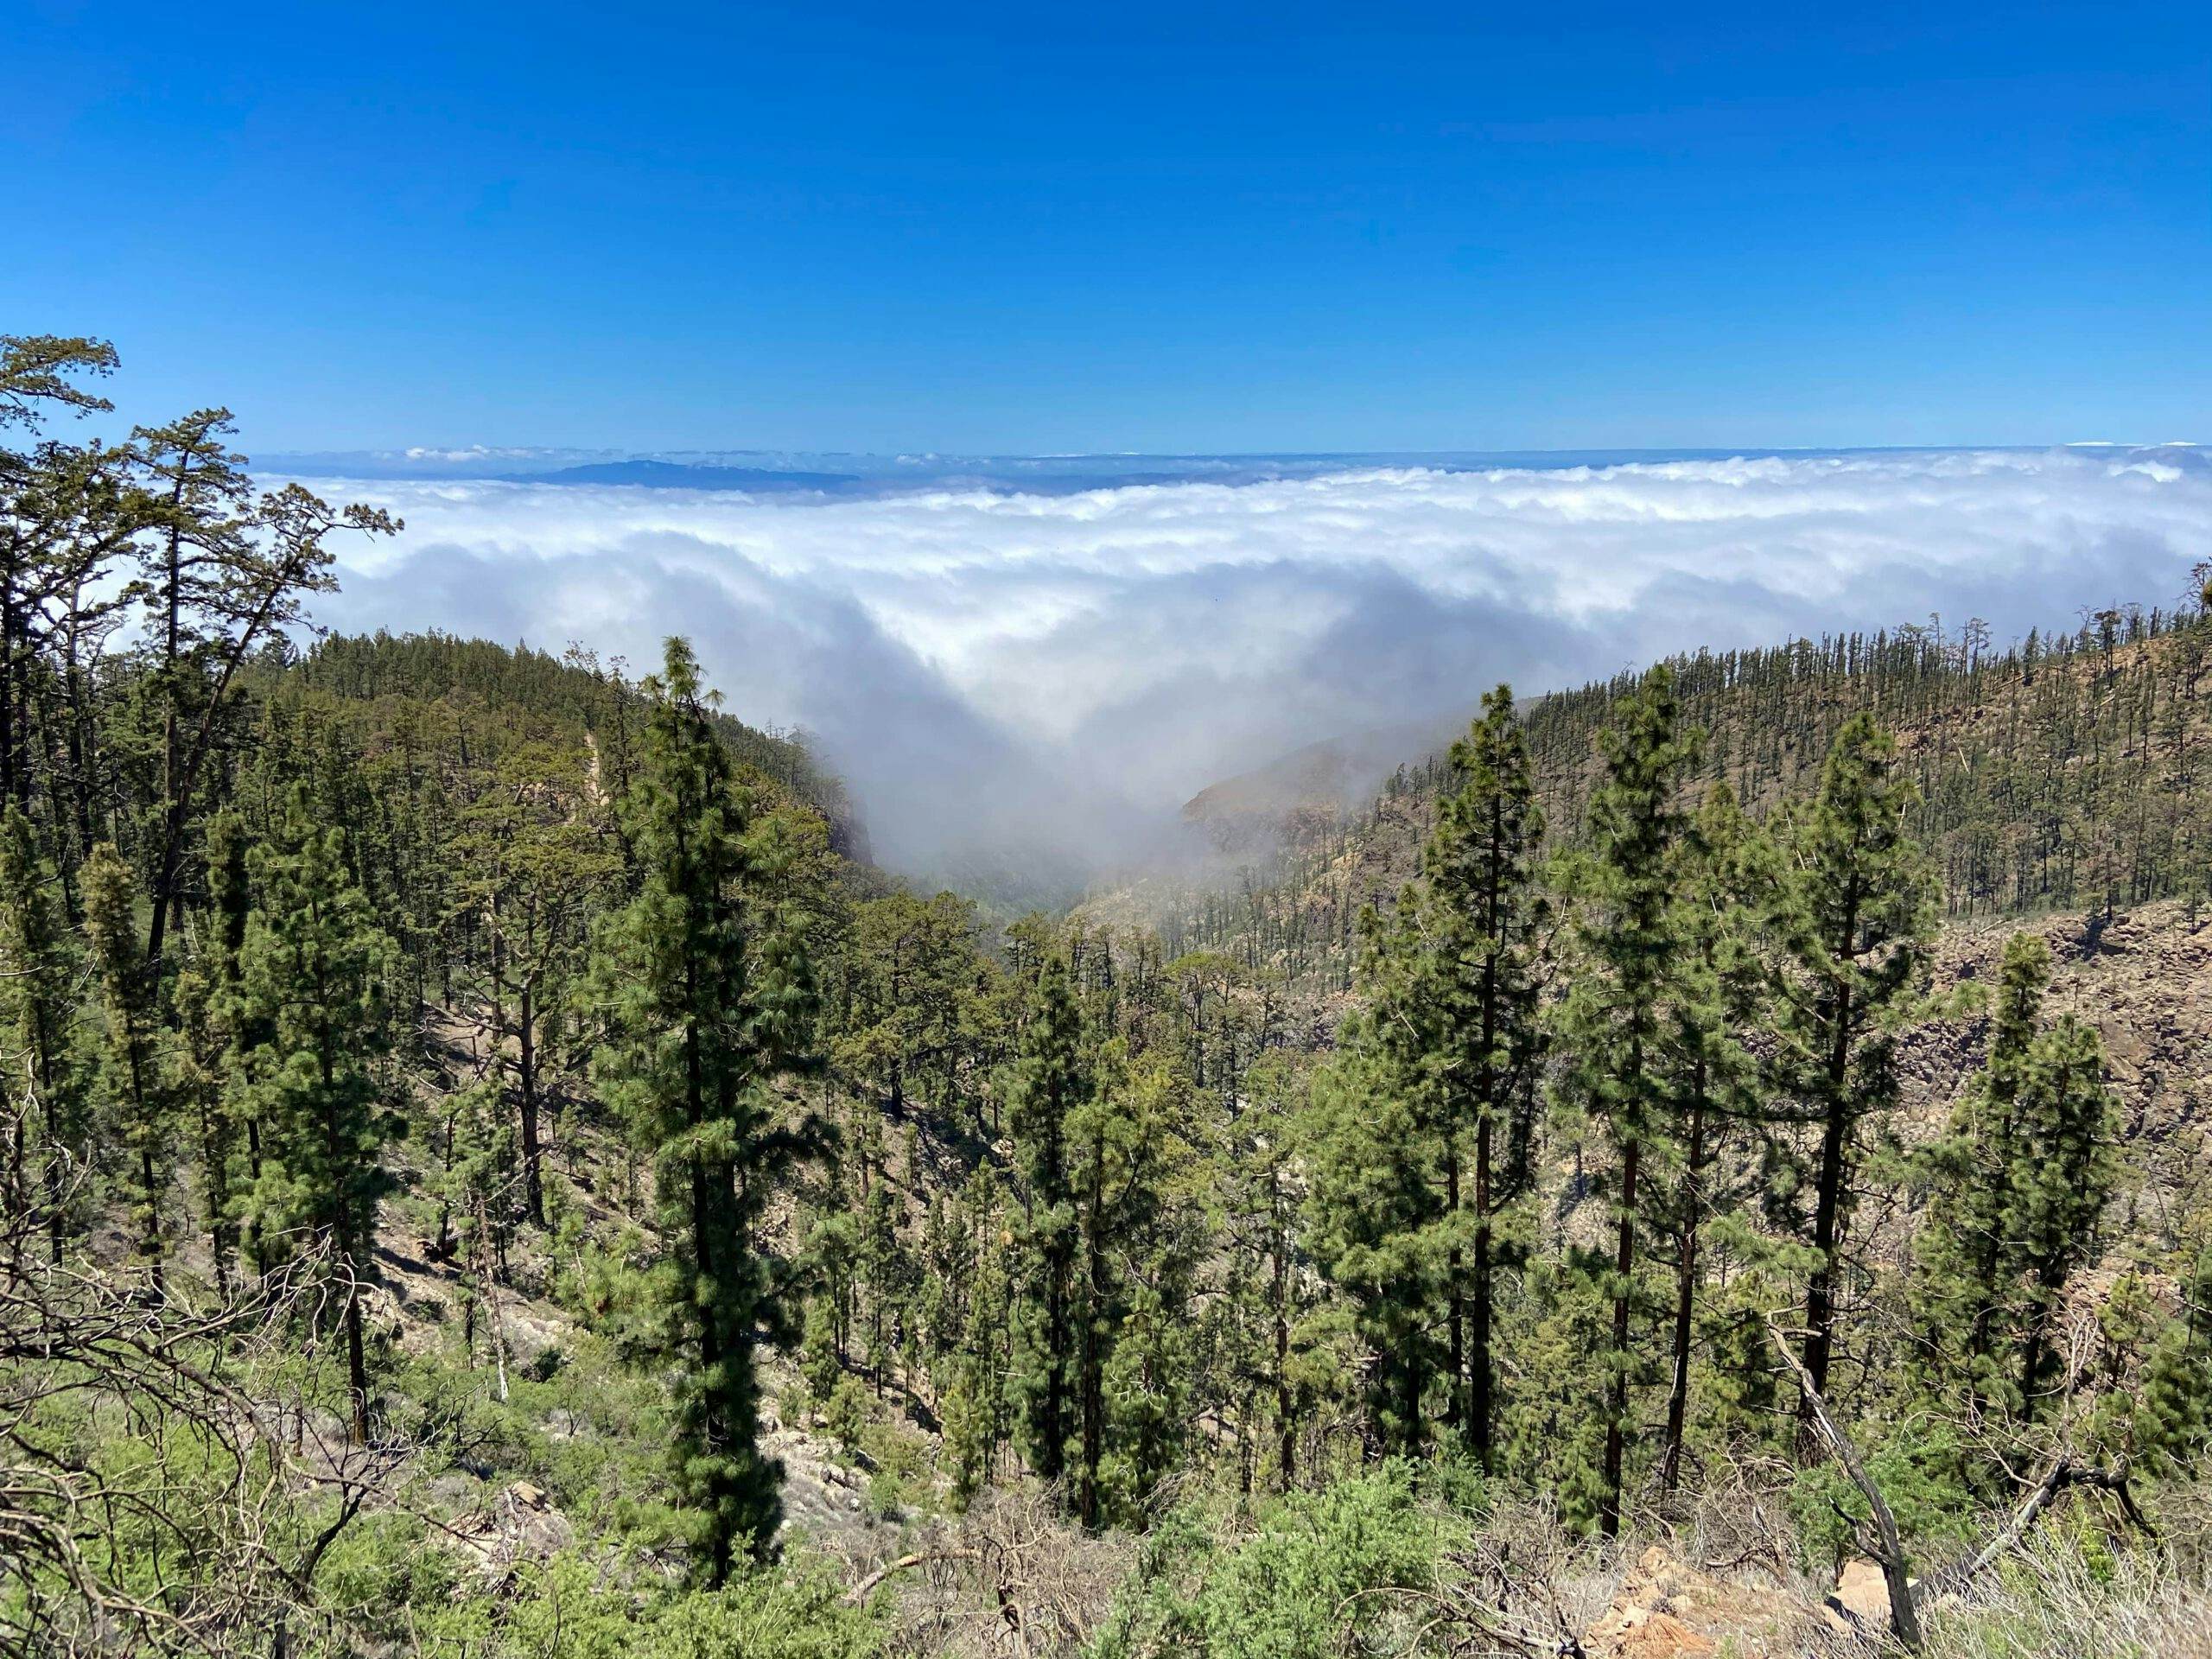 Vista desde arriba de las nubes a las islas vecinas de La Gomera y La Palma